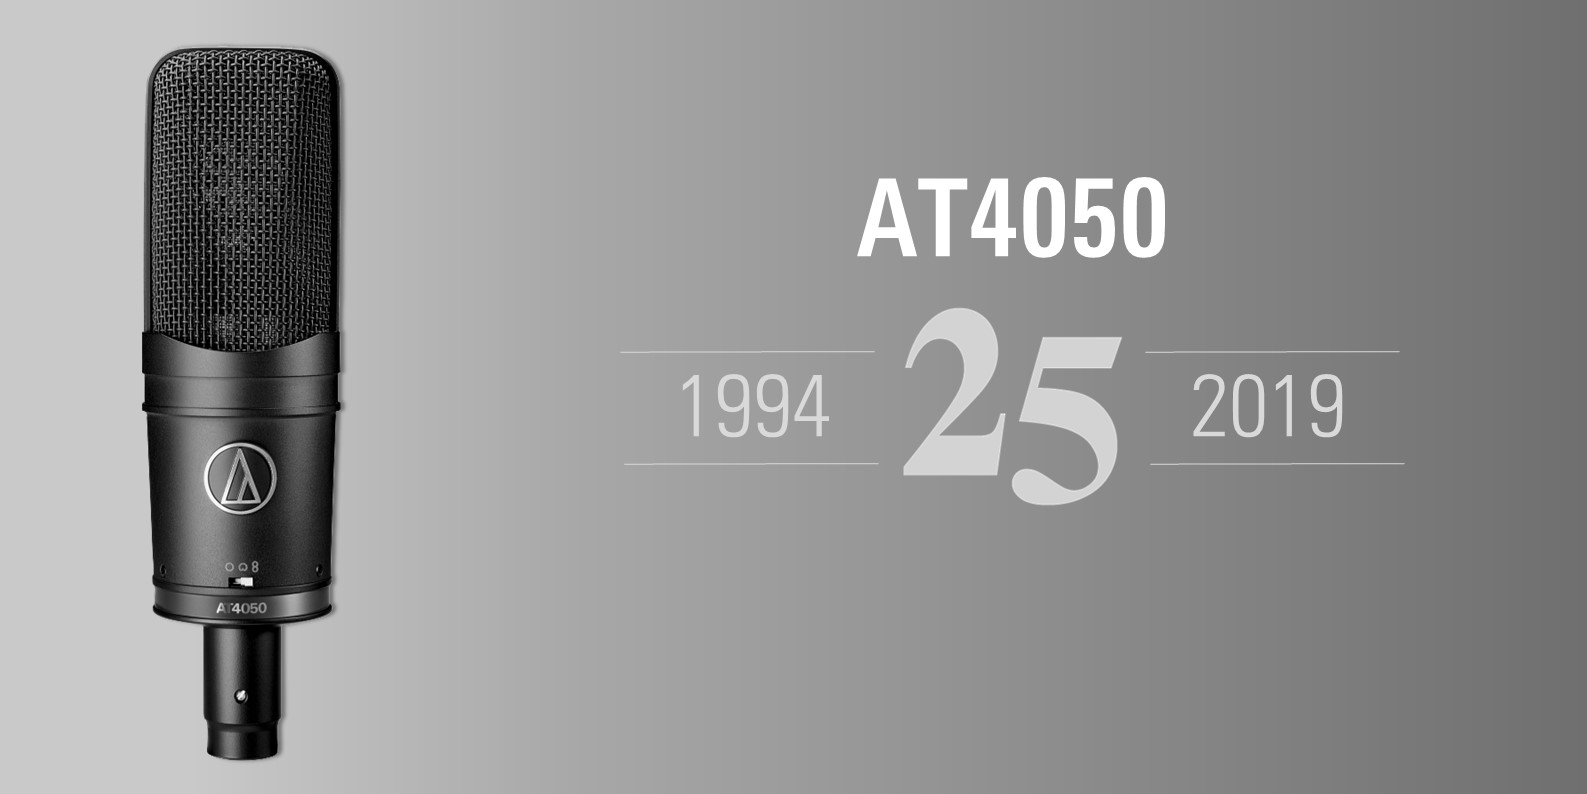 L'AT4050 compie 25 anni